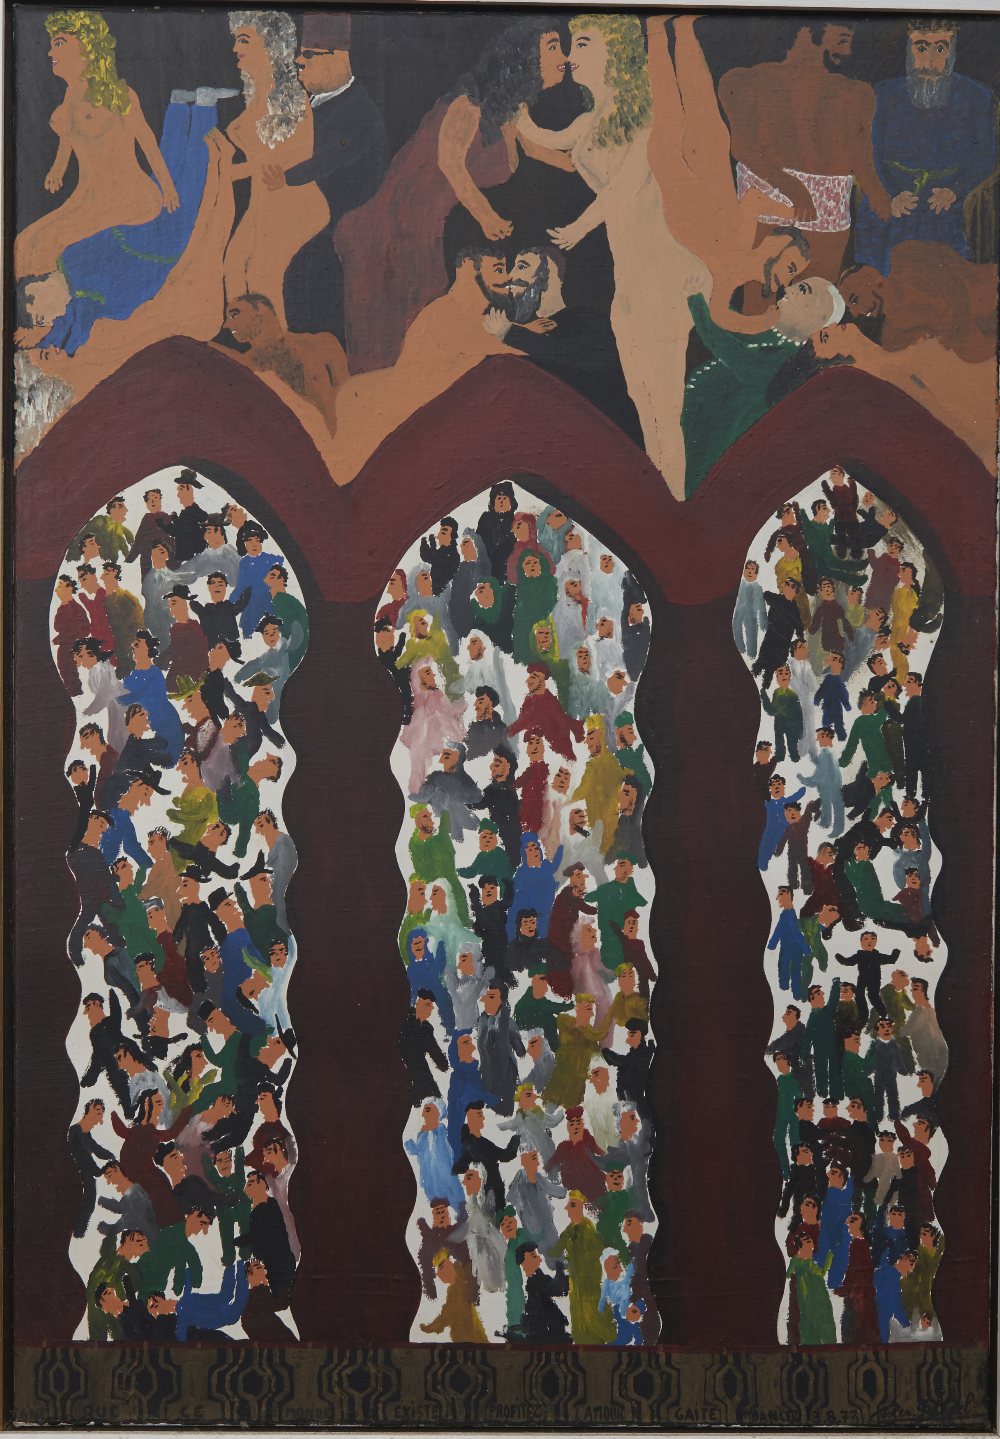 GABRIEL COHEN (1933 - 2017), ISRAELI, L'AMAER DANCER, oil on canvas, signed and dated 3.8.1973,